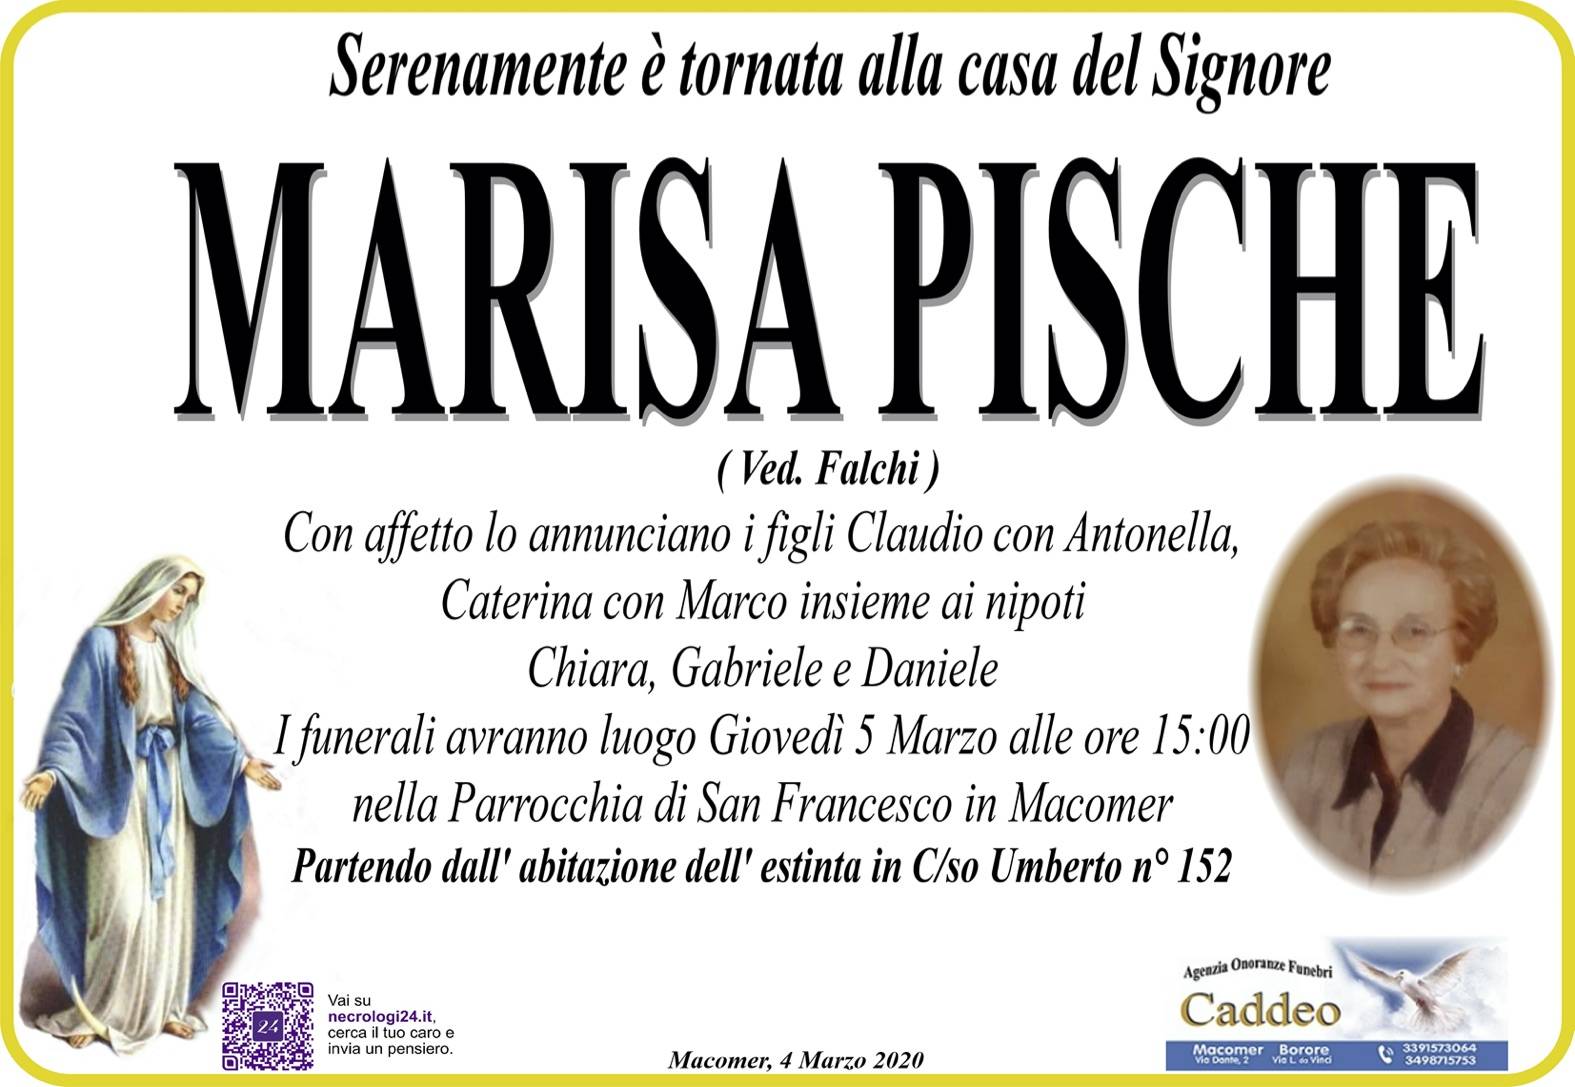 Marisa Pische